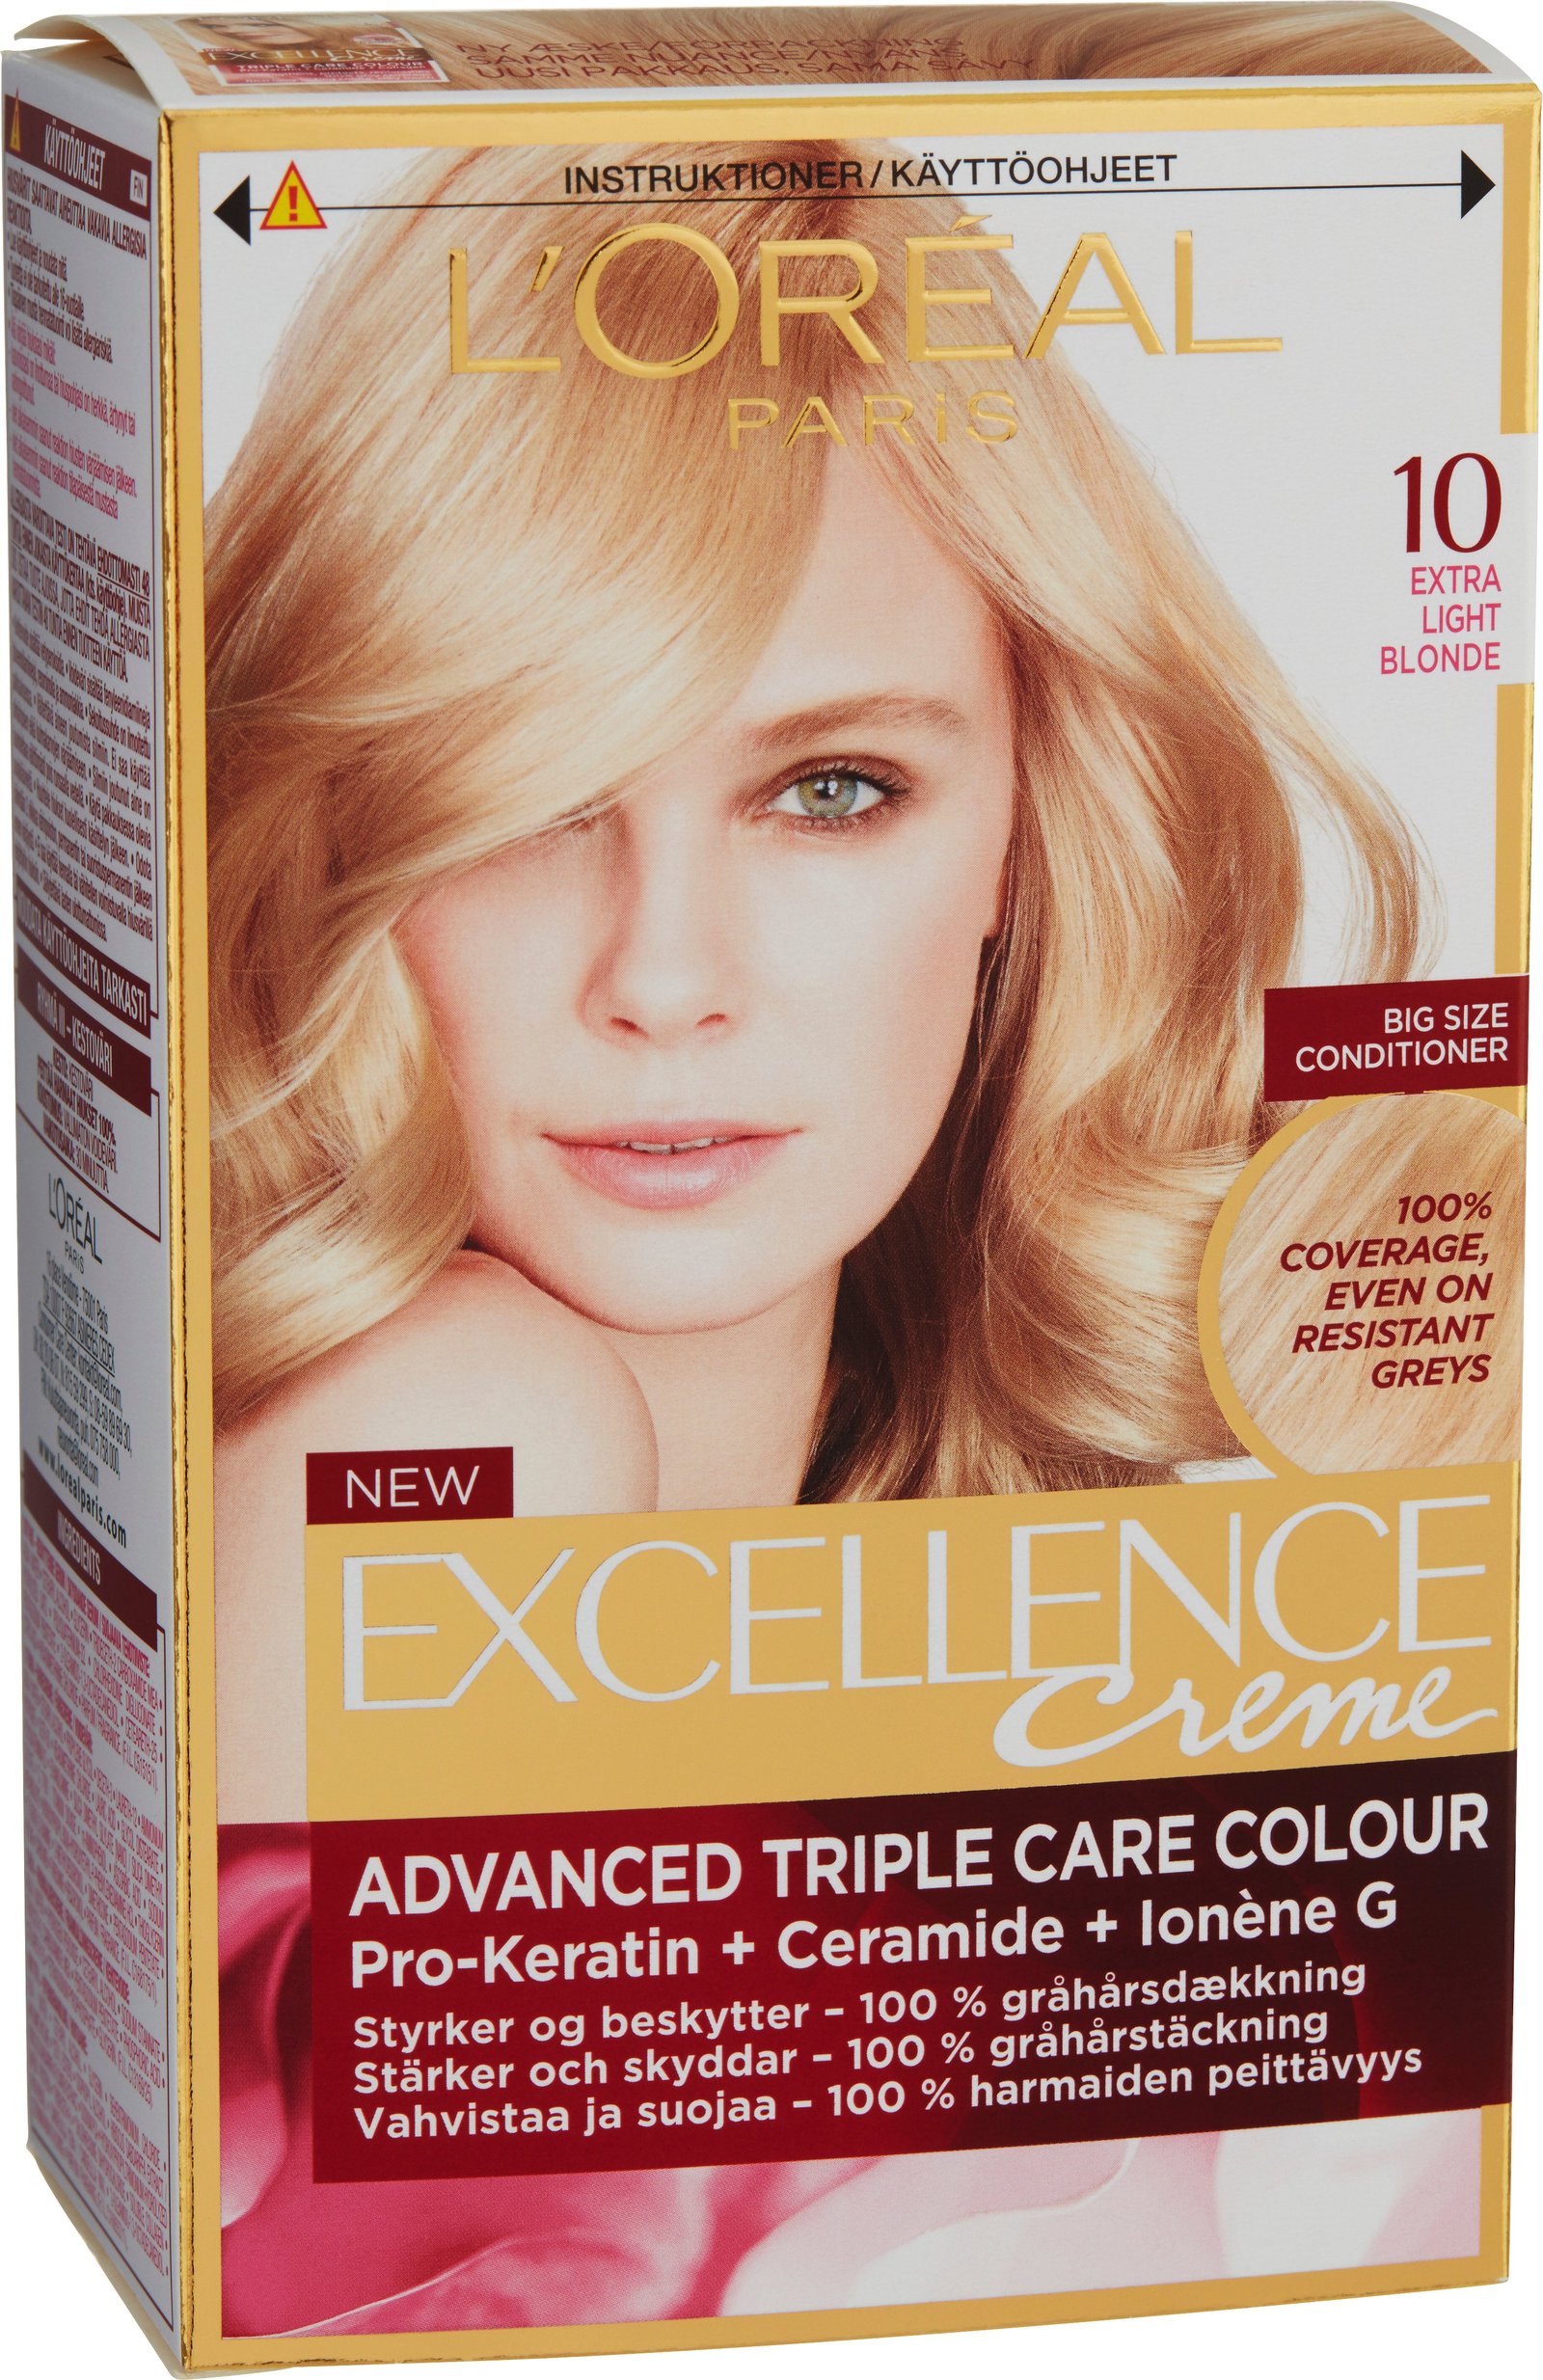 L'Oréal Paris Excellence 10 Extra Light Blonde